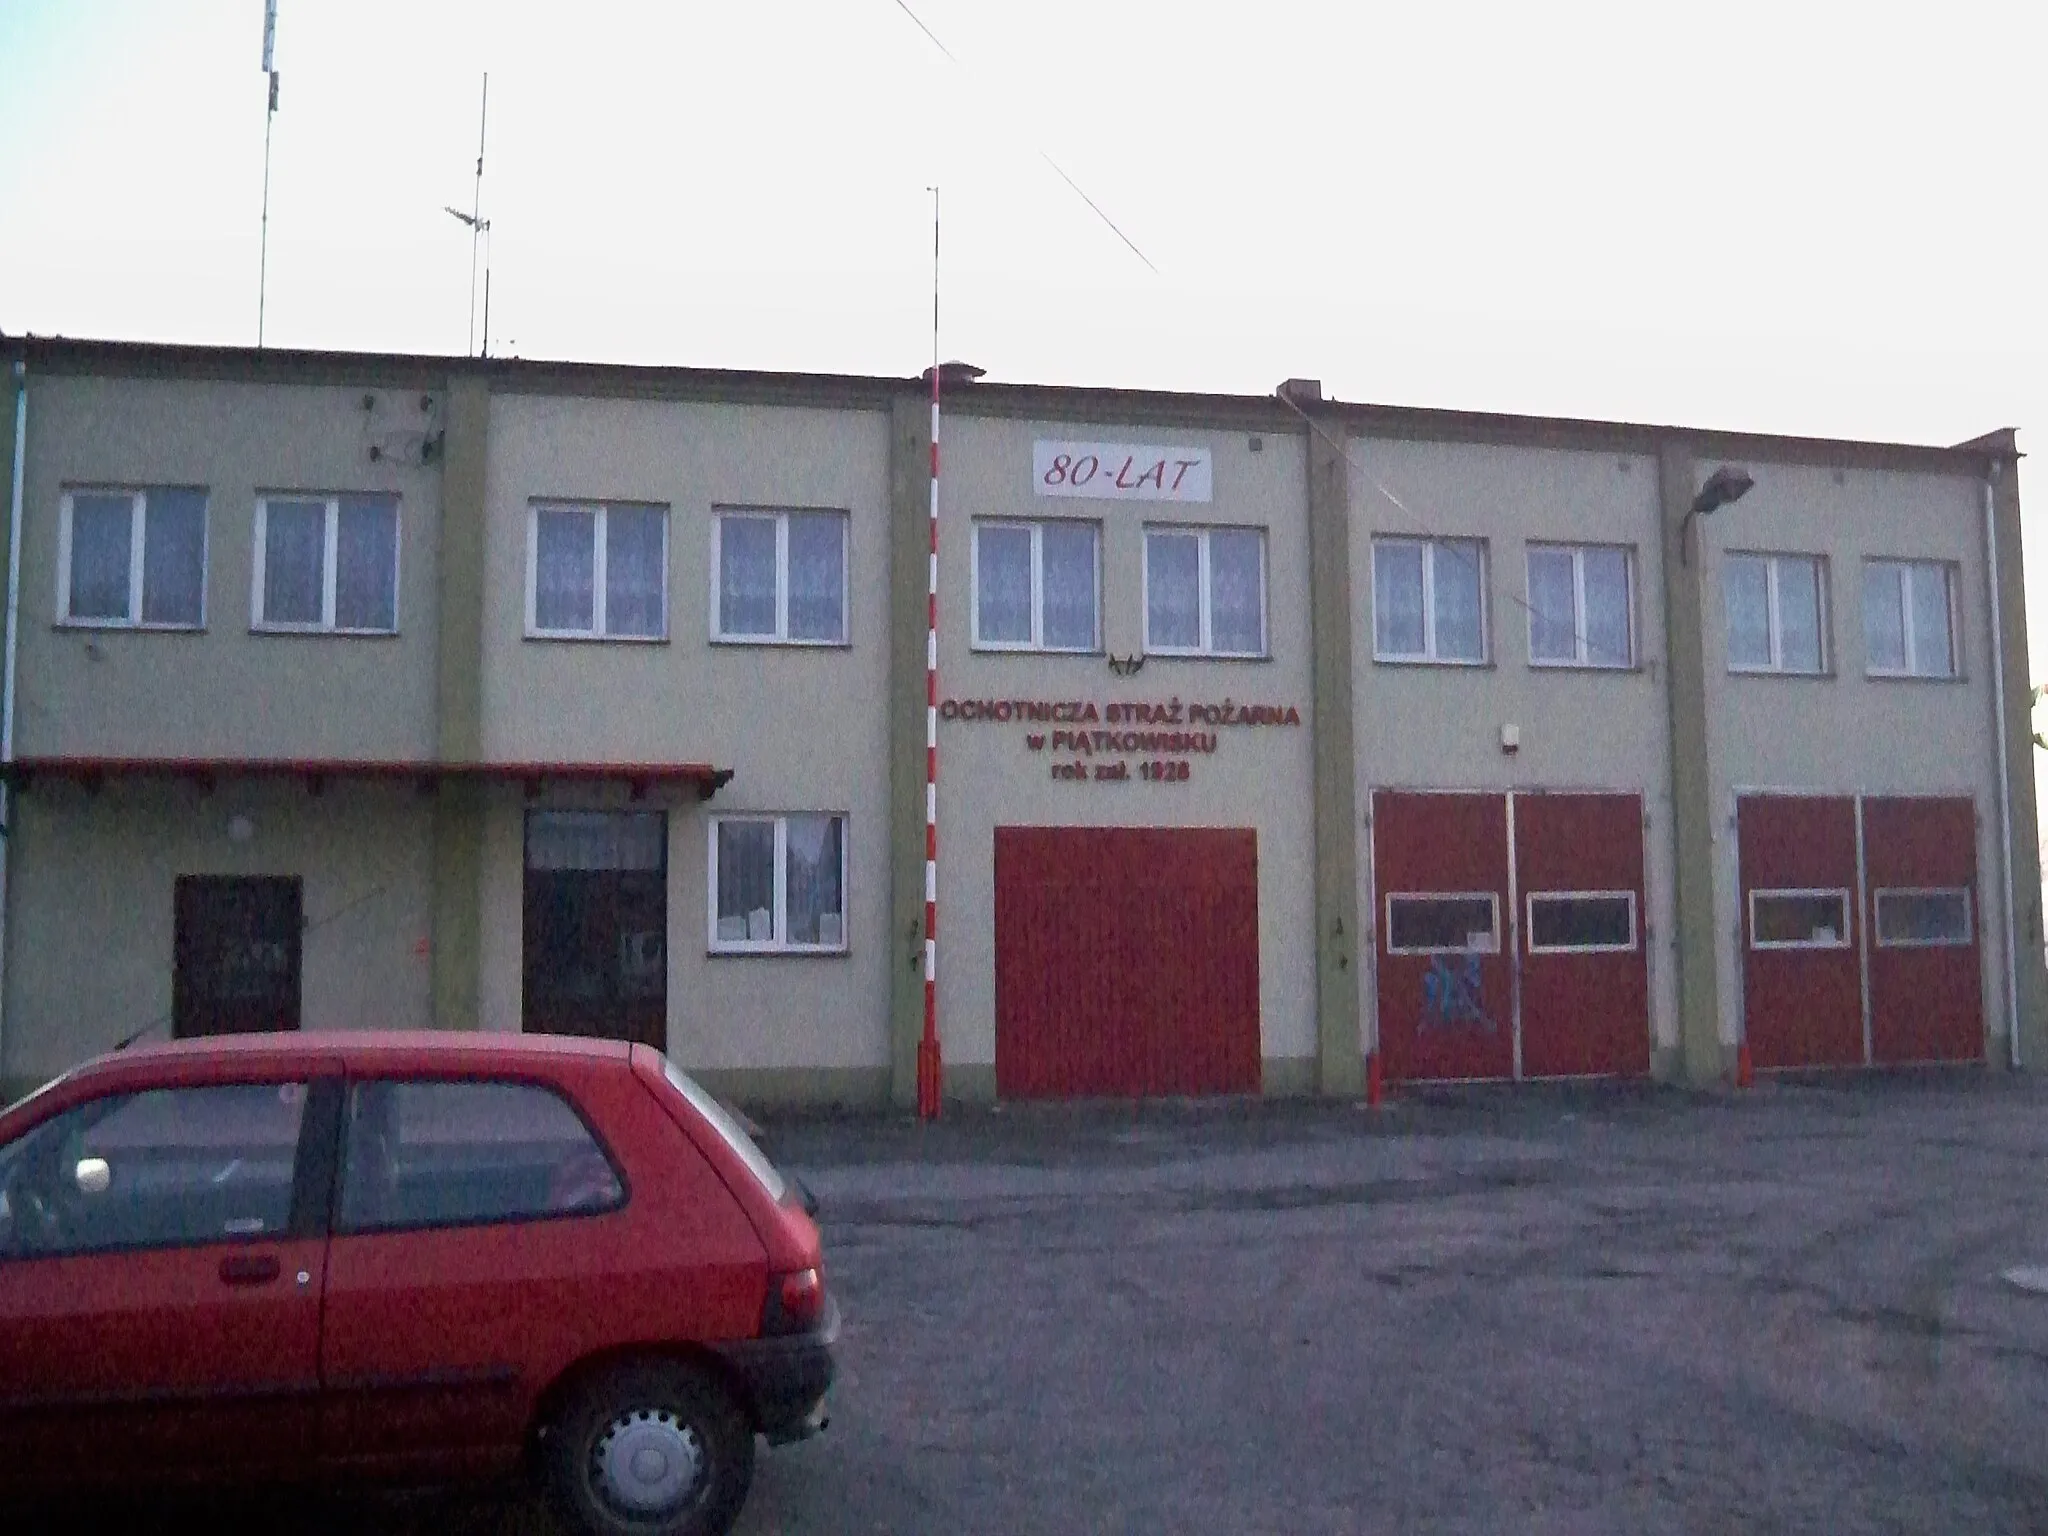 Photo showing: Volunteer fire department building in Piątkowisko.